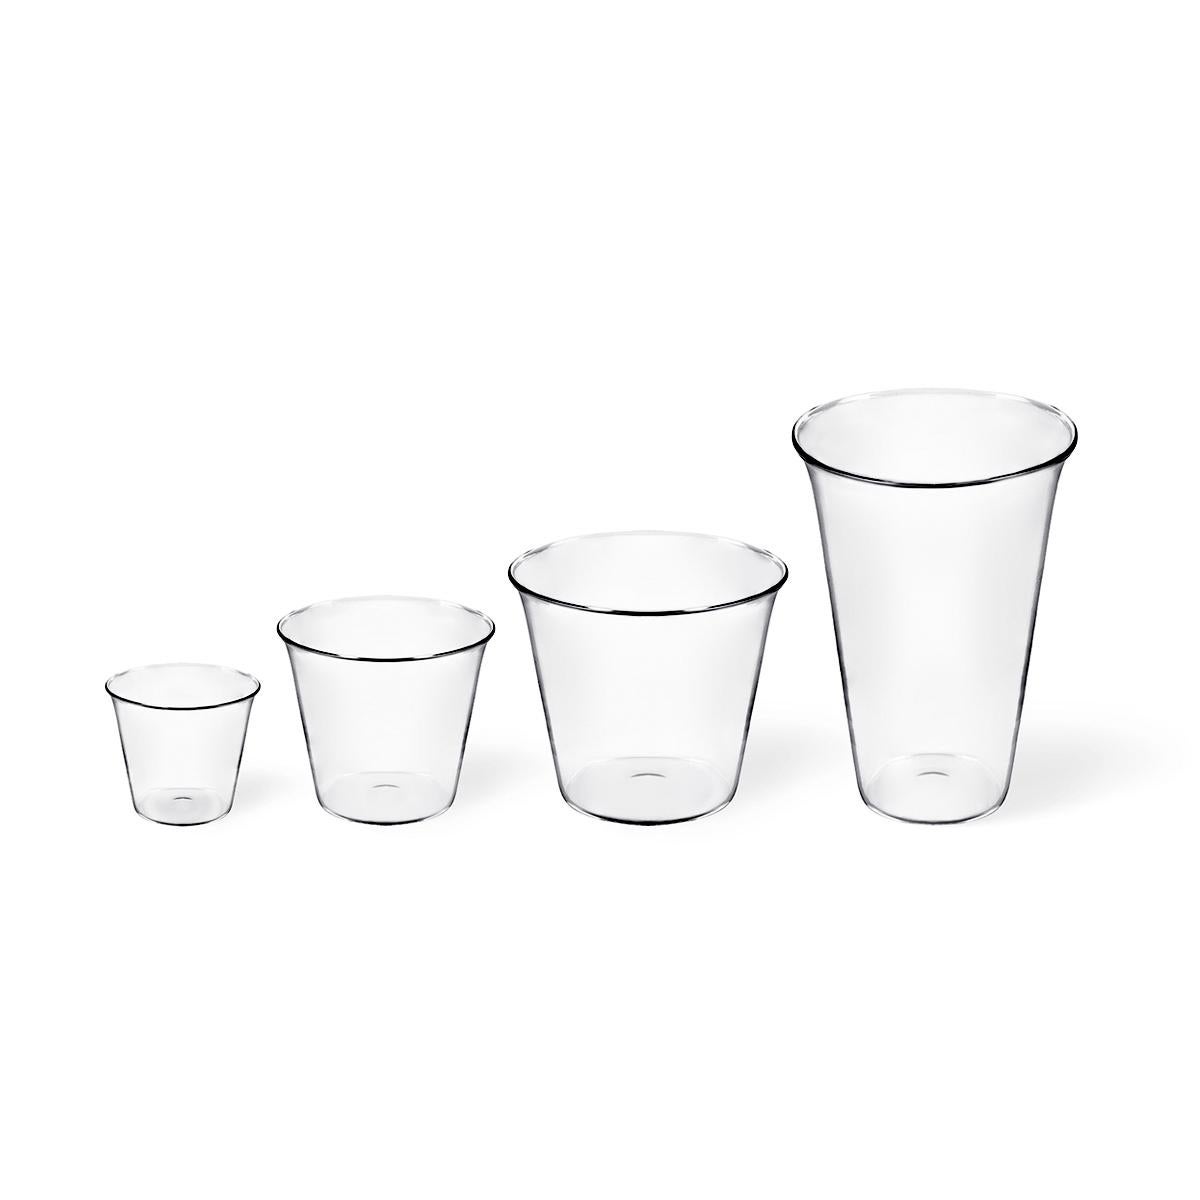 Cocktailglas aus mundgeblasenem Glas. Plume ist eine handgefertigte Glaskollektion, die von Aldo Cibic in seinem Stil entworfen wurde, der sich durch die Liebe zu Gegenständen auszeichnet, die dem Fluss der Moden und den Veränderungen der